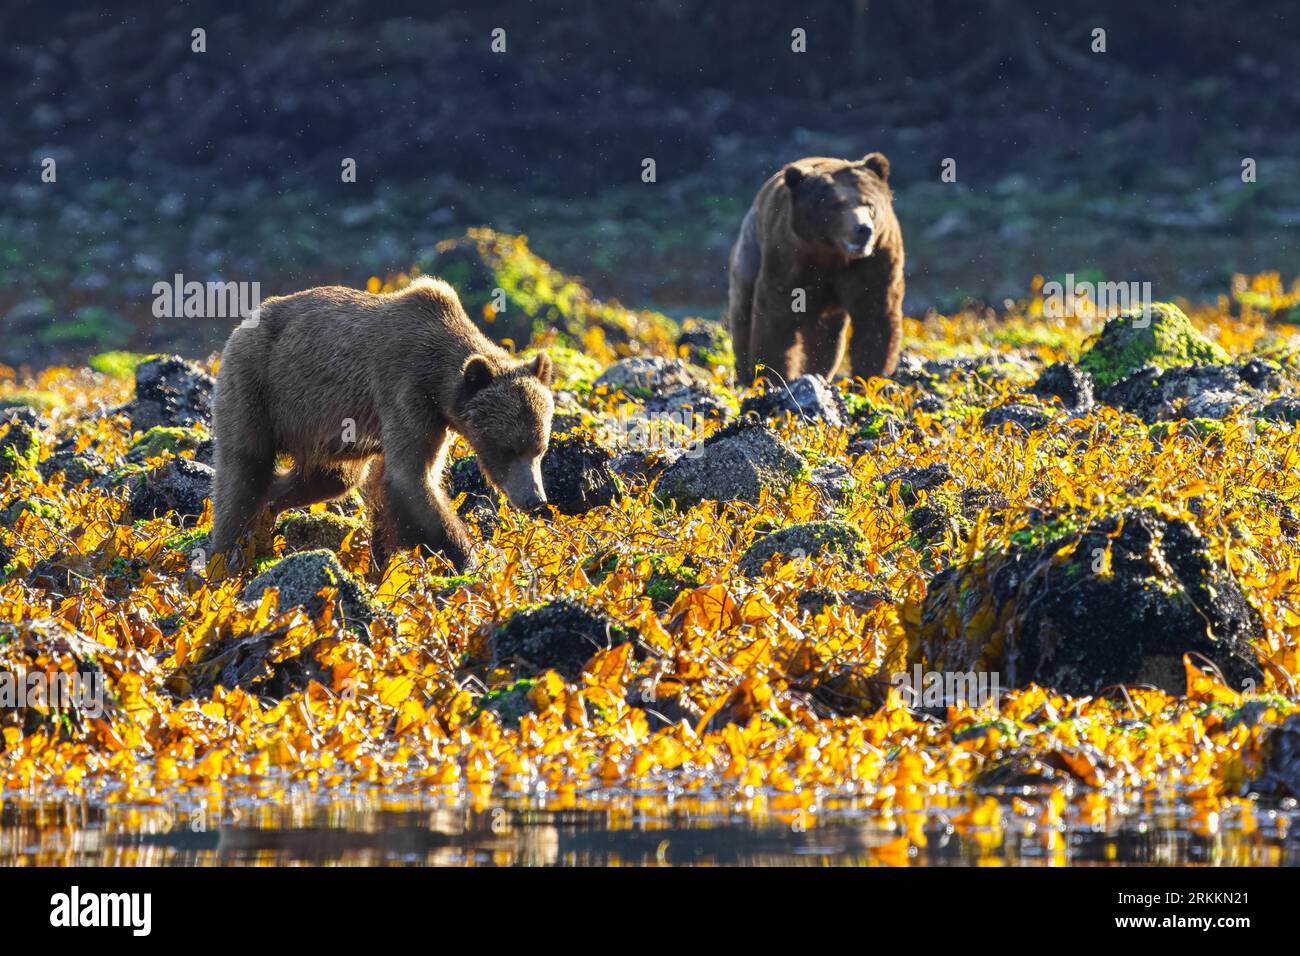 Orsi grizzly femminili e maschili nella baia di Siwash durante la bassa marea nella splendida baia di Knight Inlet, territorio delle prime Nazioni, territori tradizionali del Kwakwaka Foto Stock